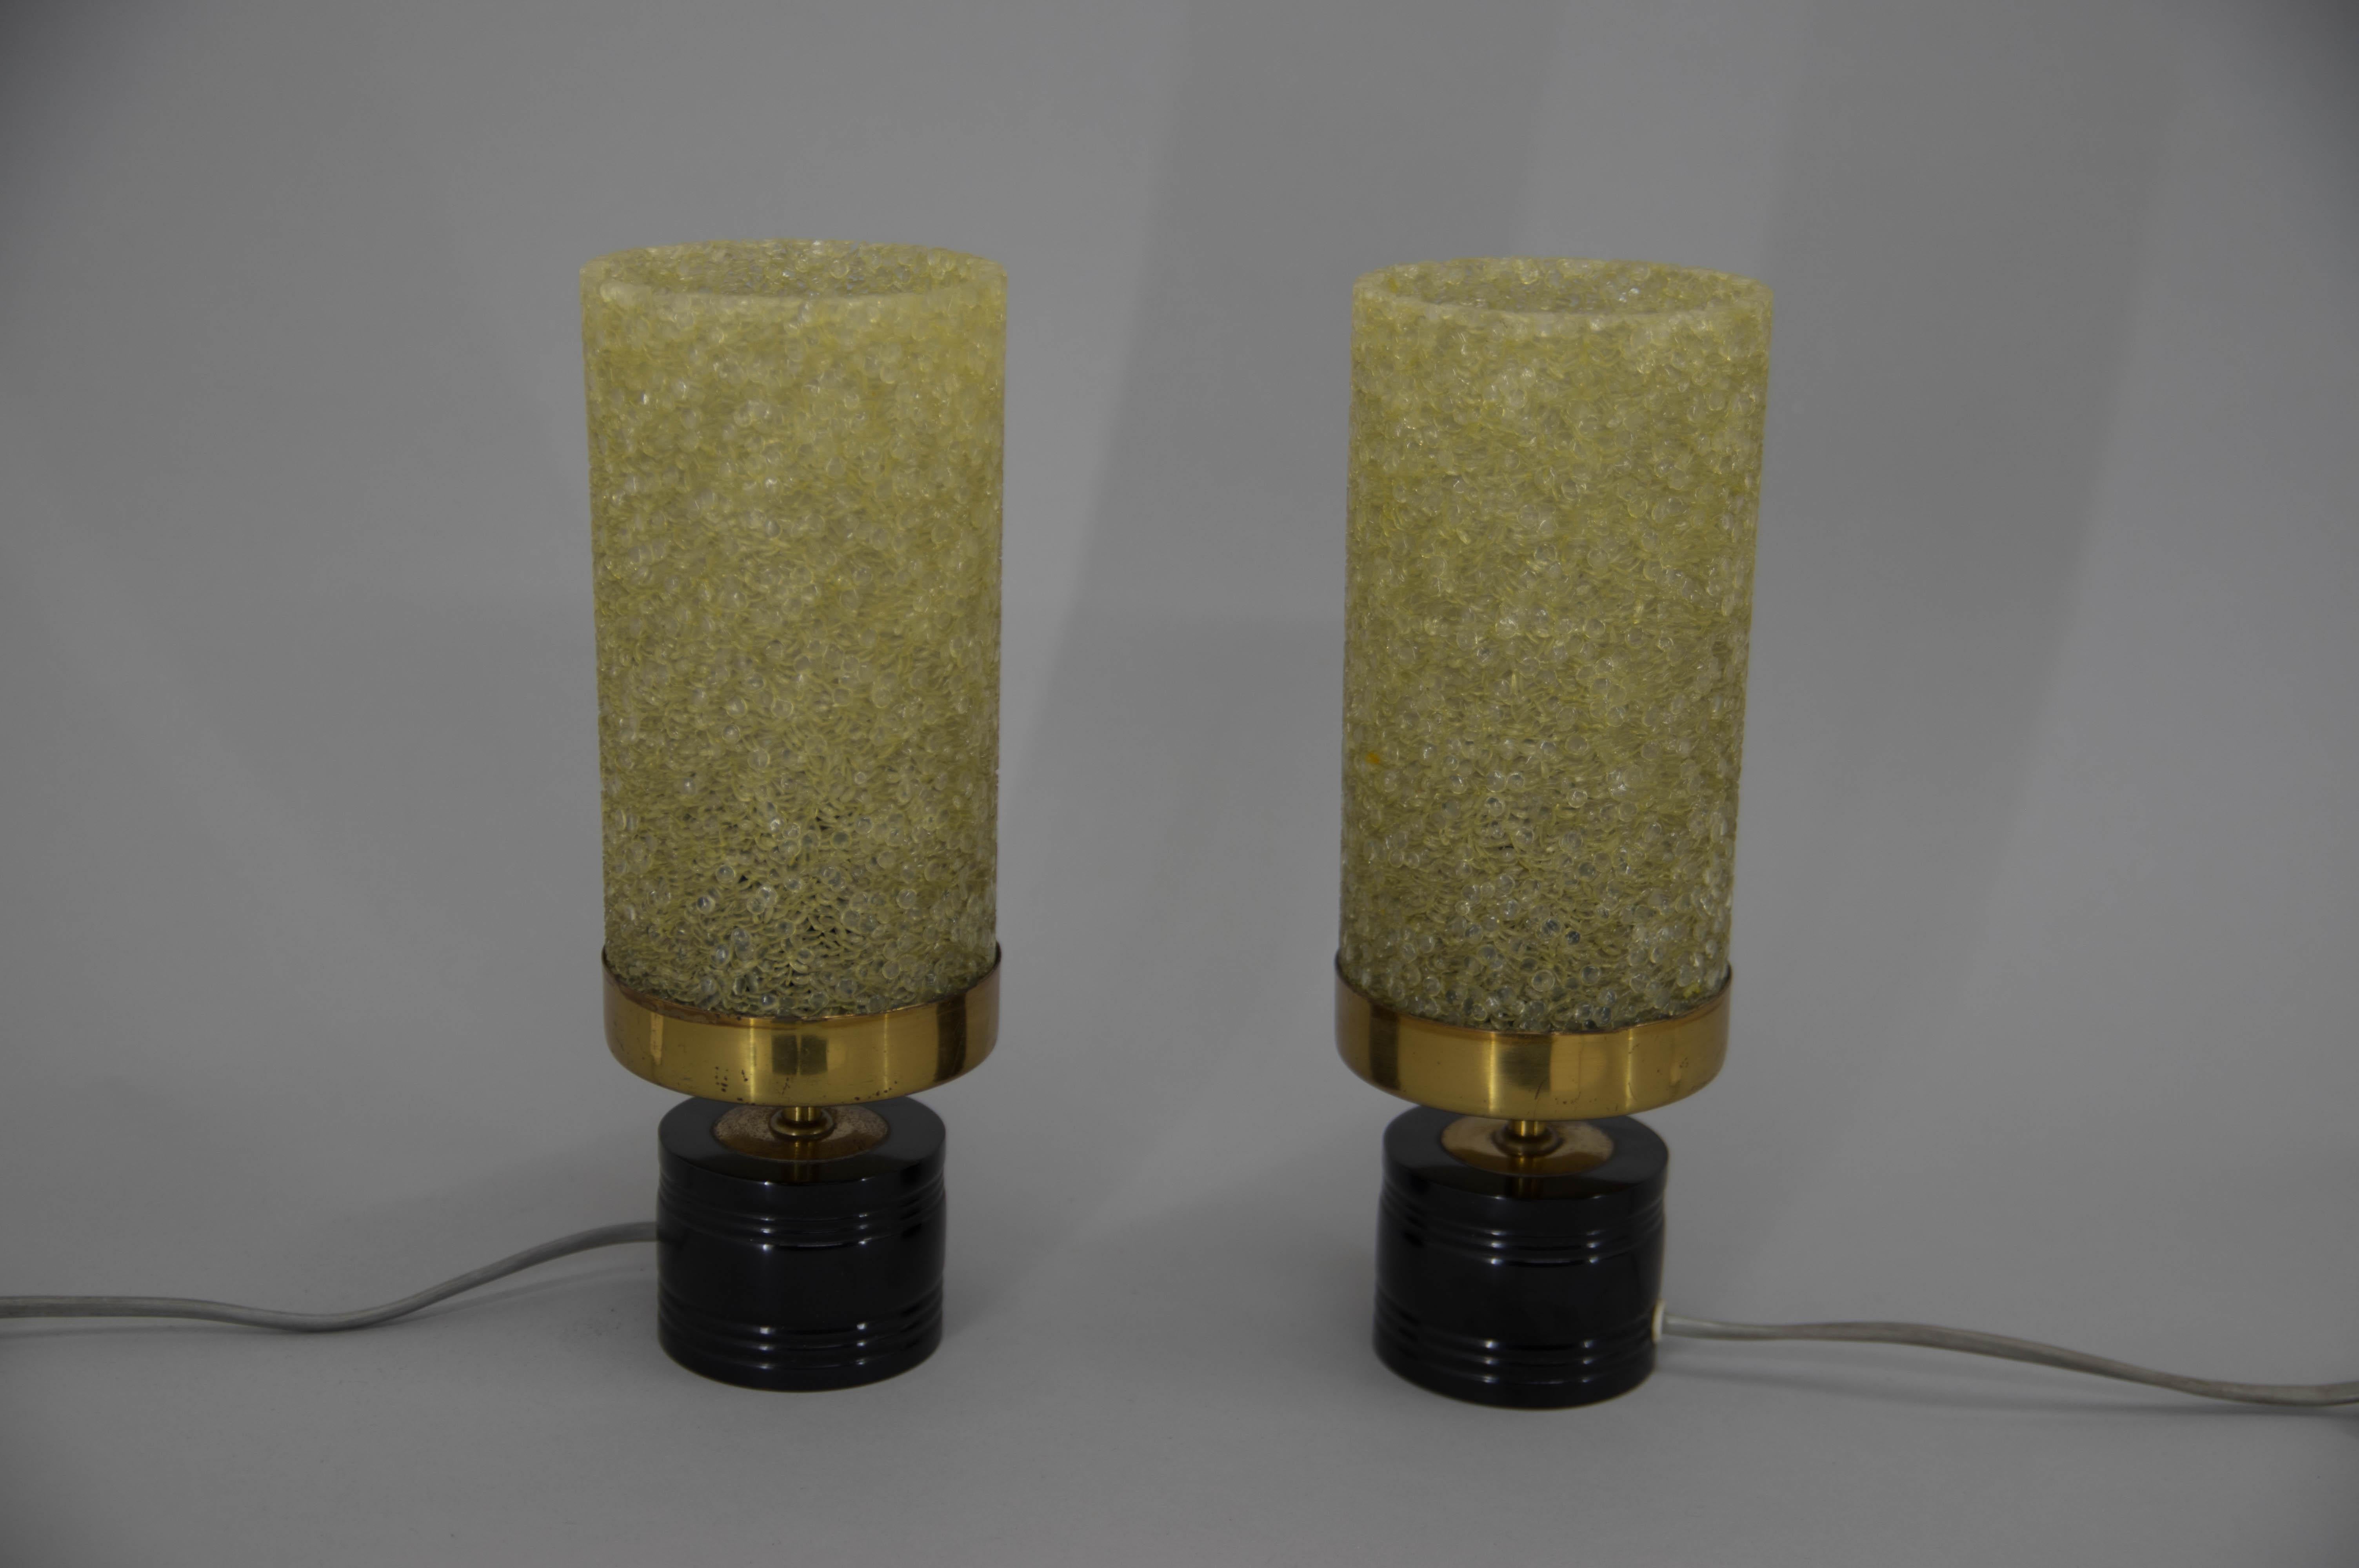 Tischlampen aus Metall, Messing und Harz
Maße: 1x40W, E25-E27 Glühbirnen
Inklusive US-Steckeradapter.